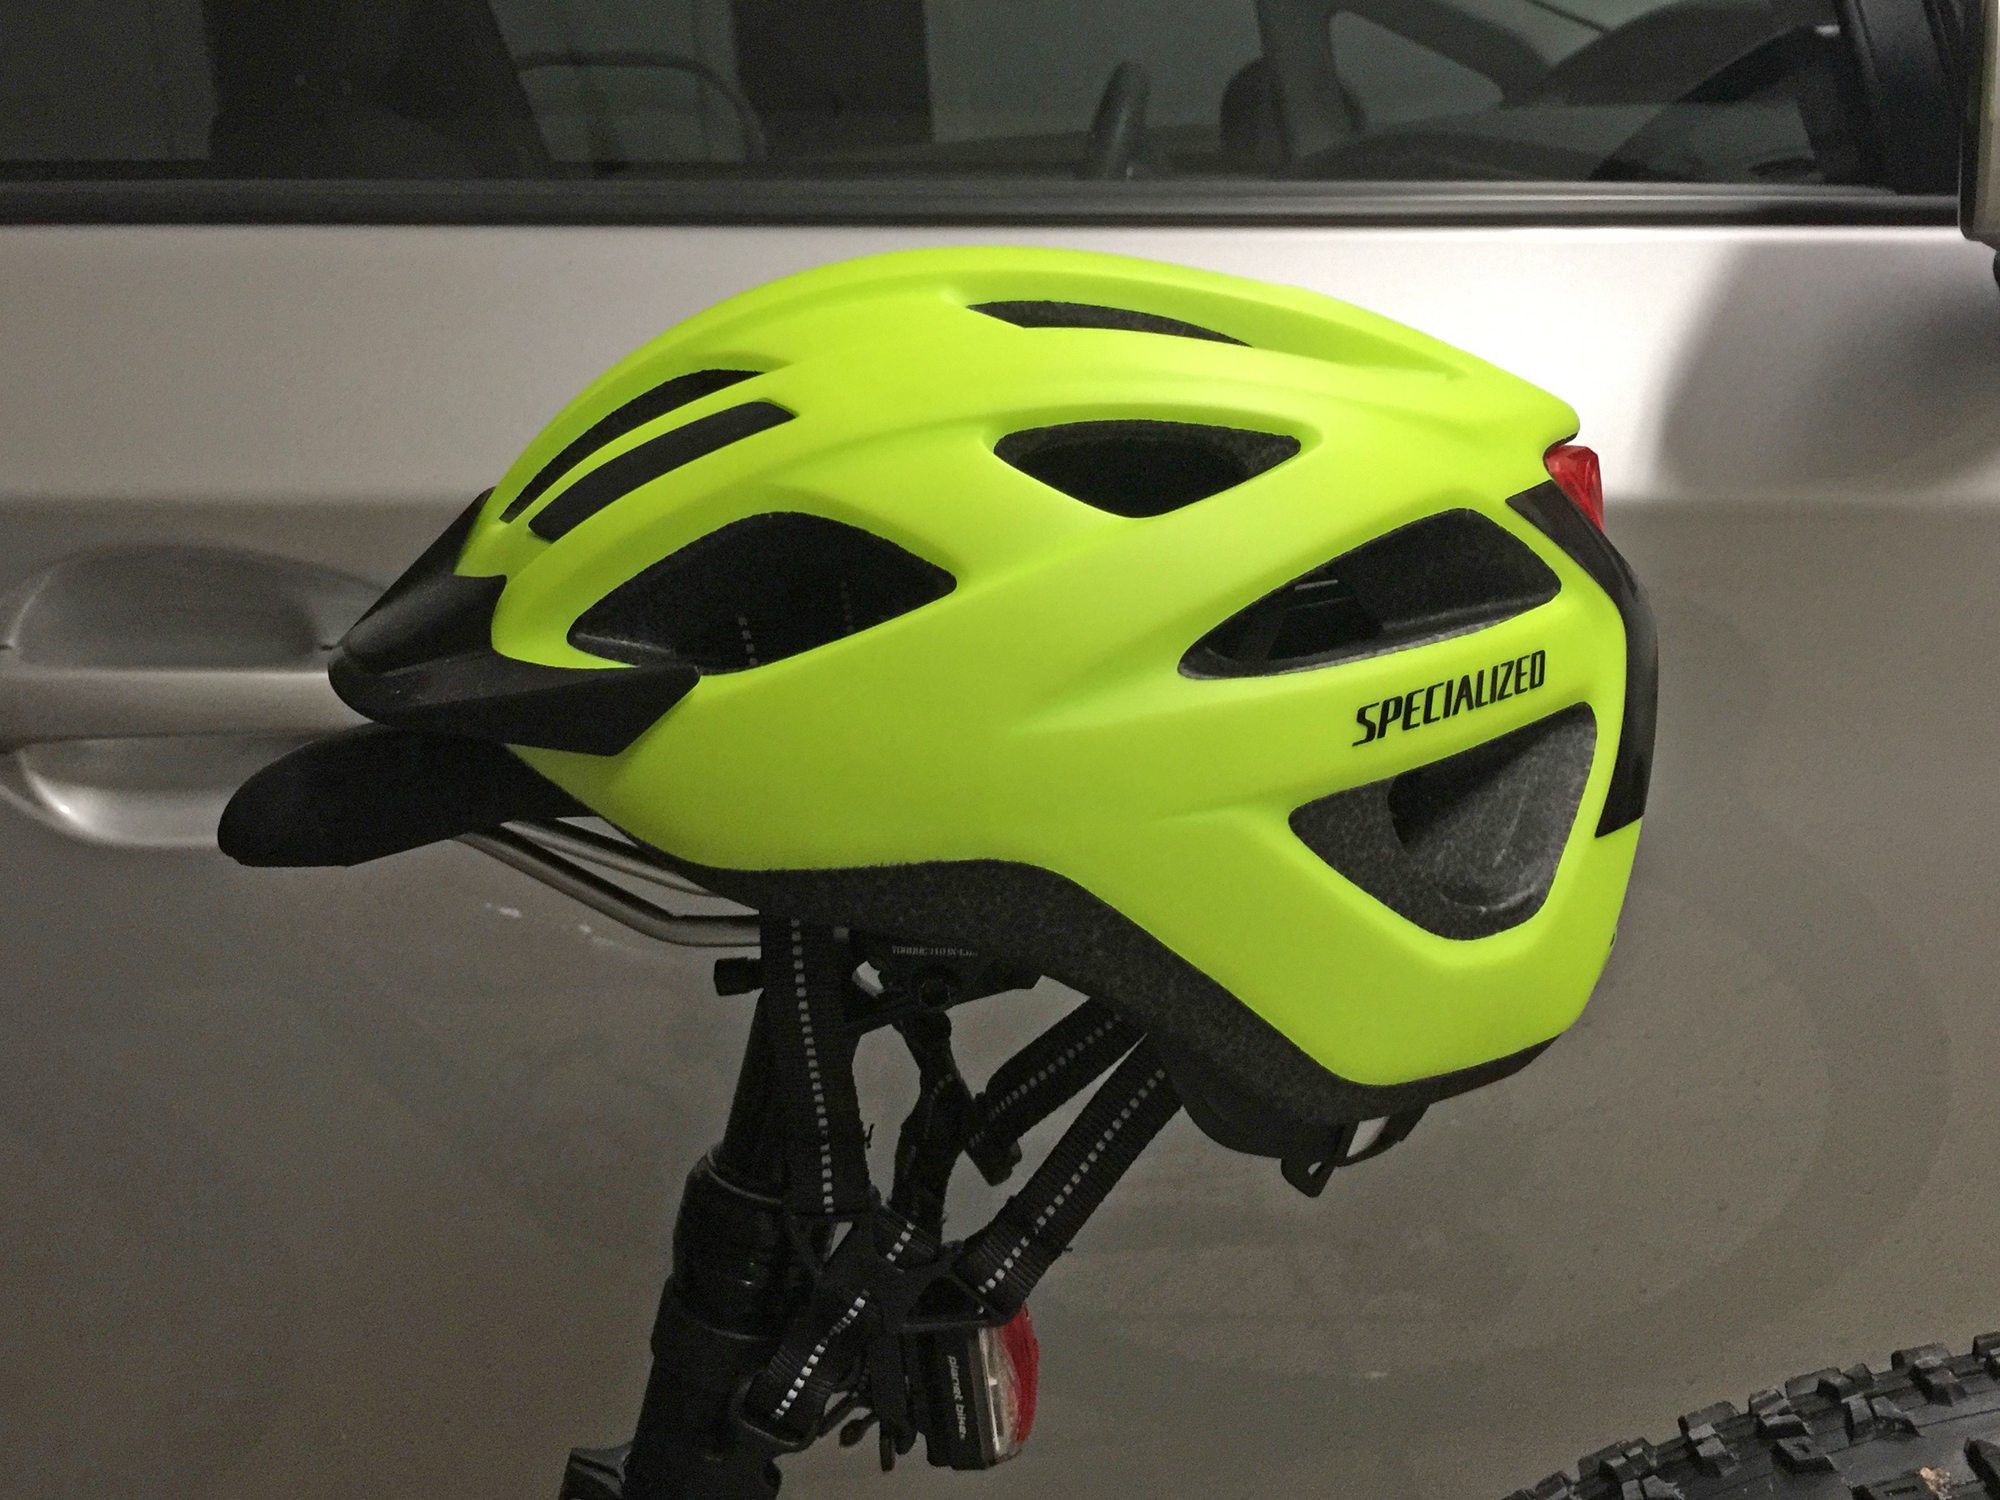 specialized bike helmets canada